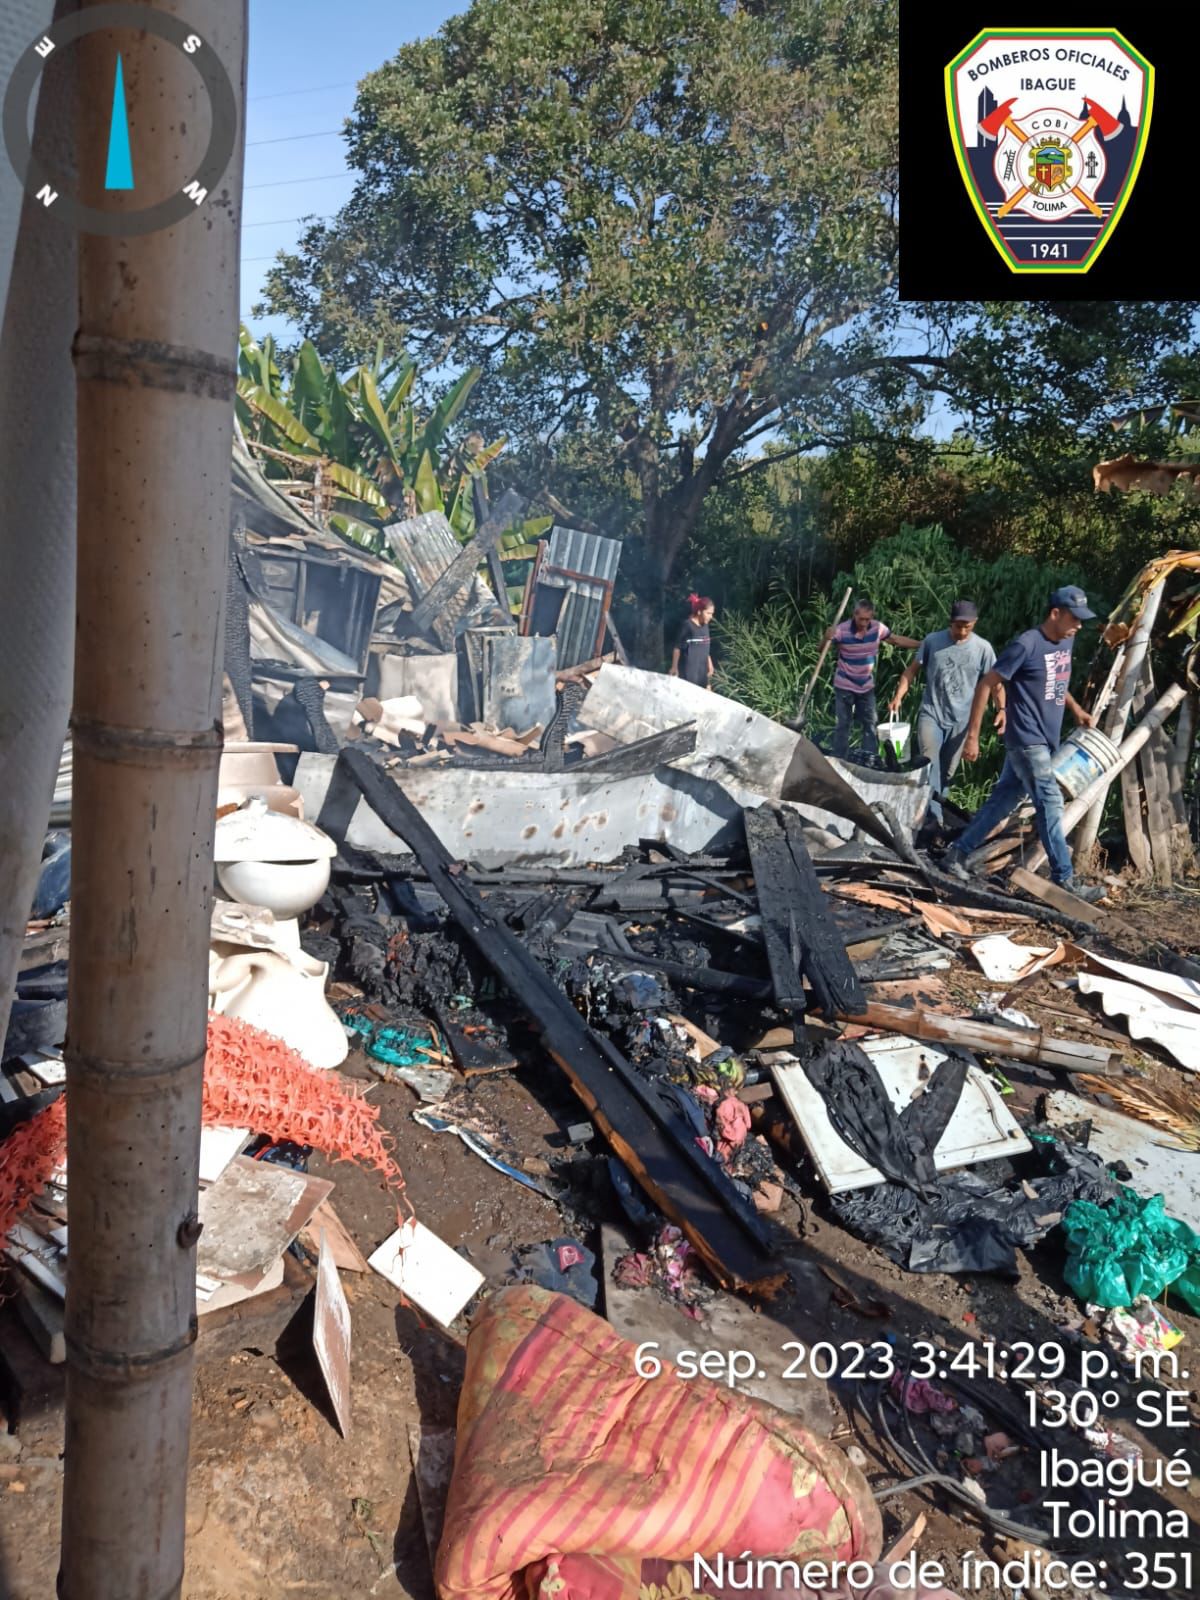 Bomberos Oficiales de Ibagué extinguen incendio en Villa Resistencia 4